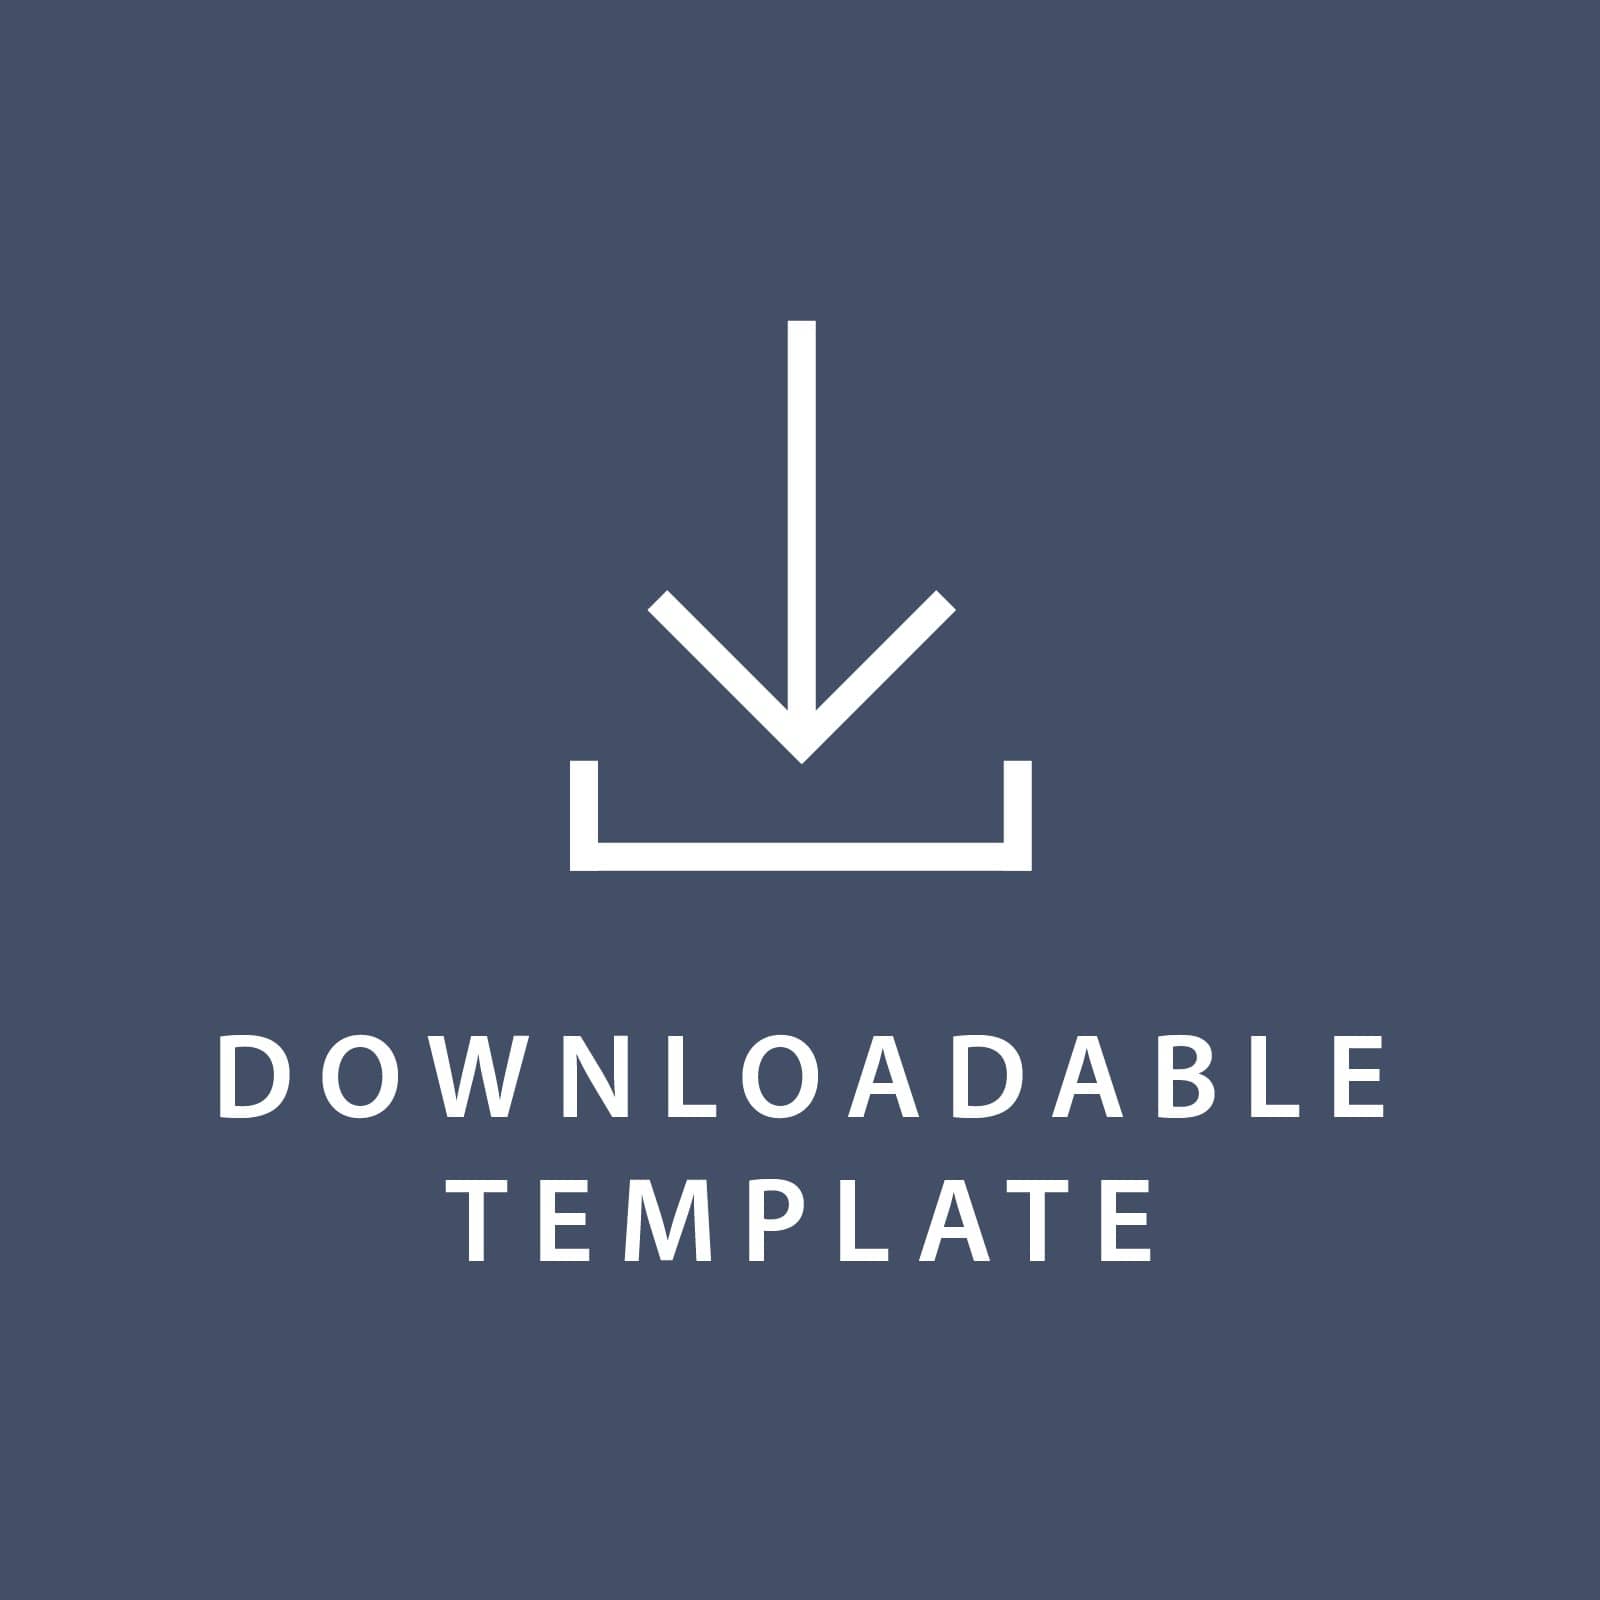 Template for 5.5 x 8.5 Invitations Gartner Studios Template tmplt0845